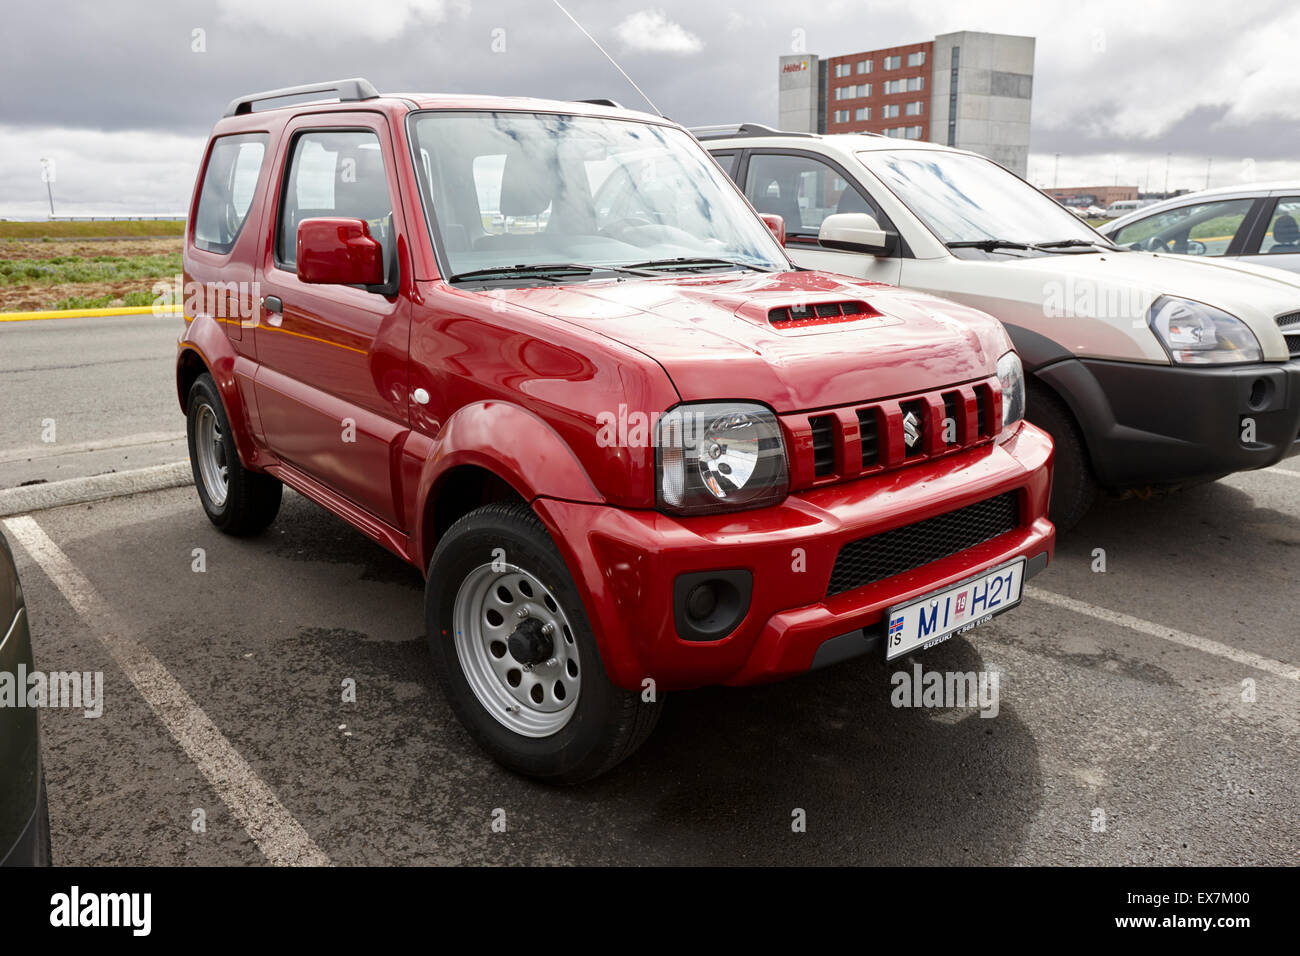 Red Suzuki Jimny jeep noleggio auto a Keflavik aeroporto Islanda Foto Stock